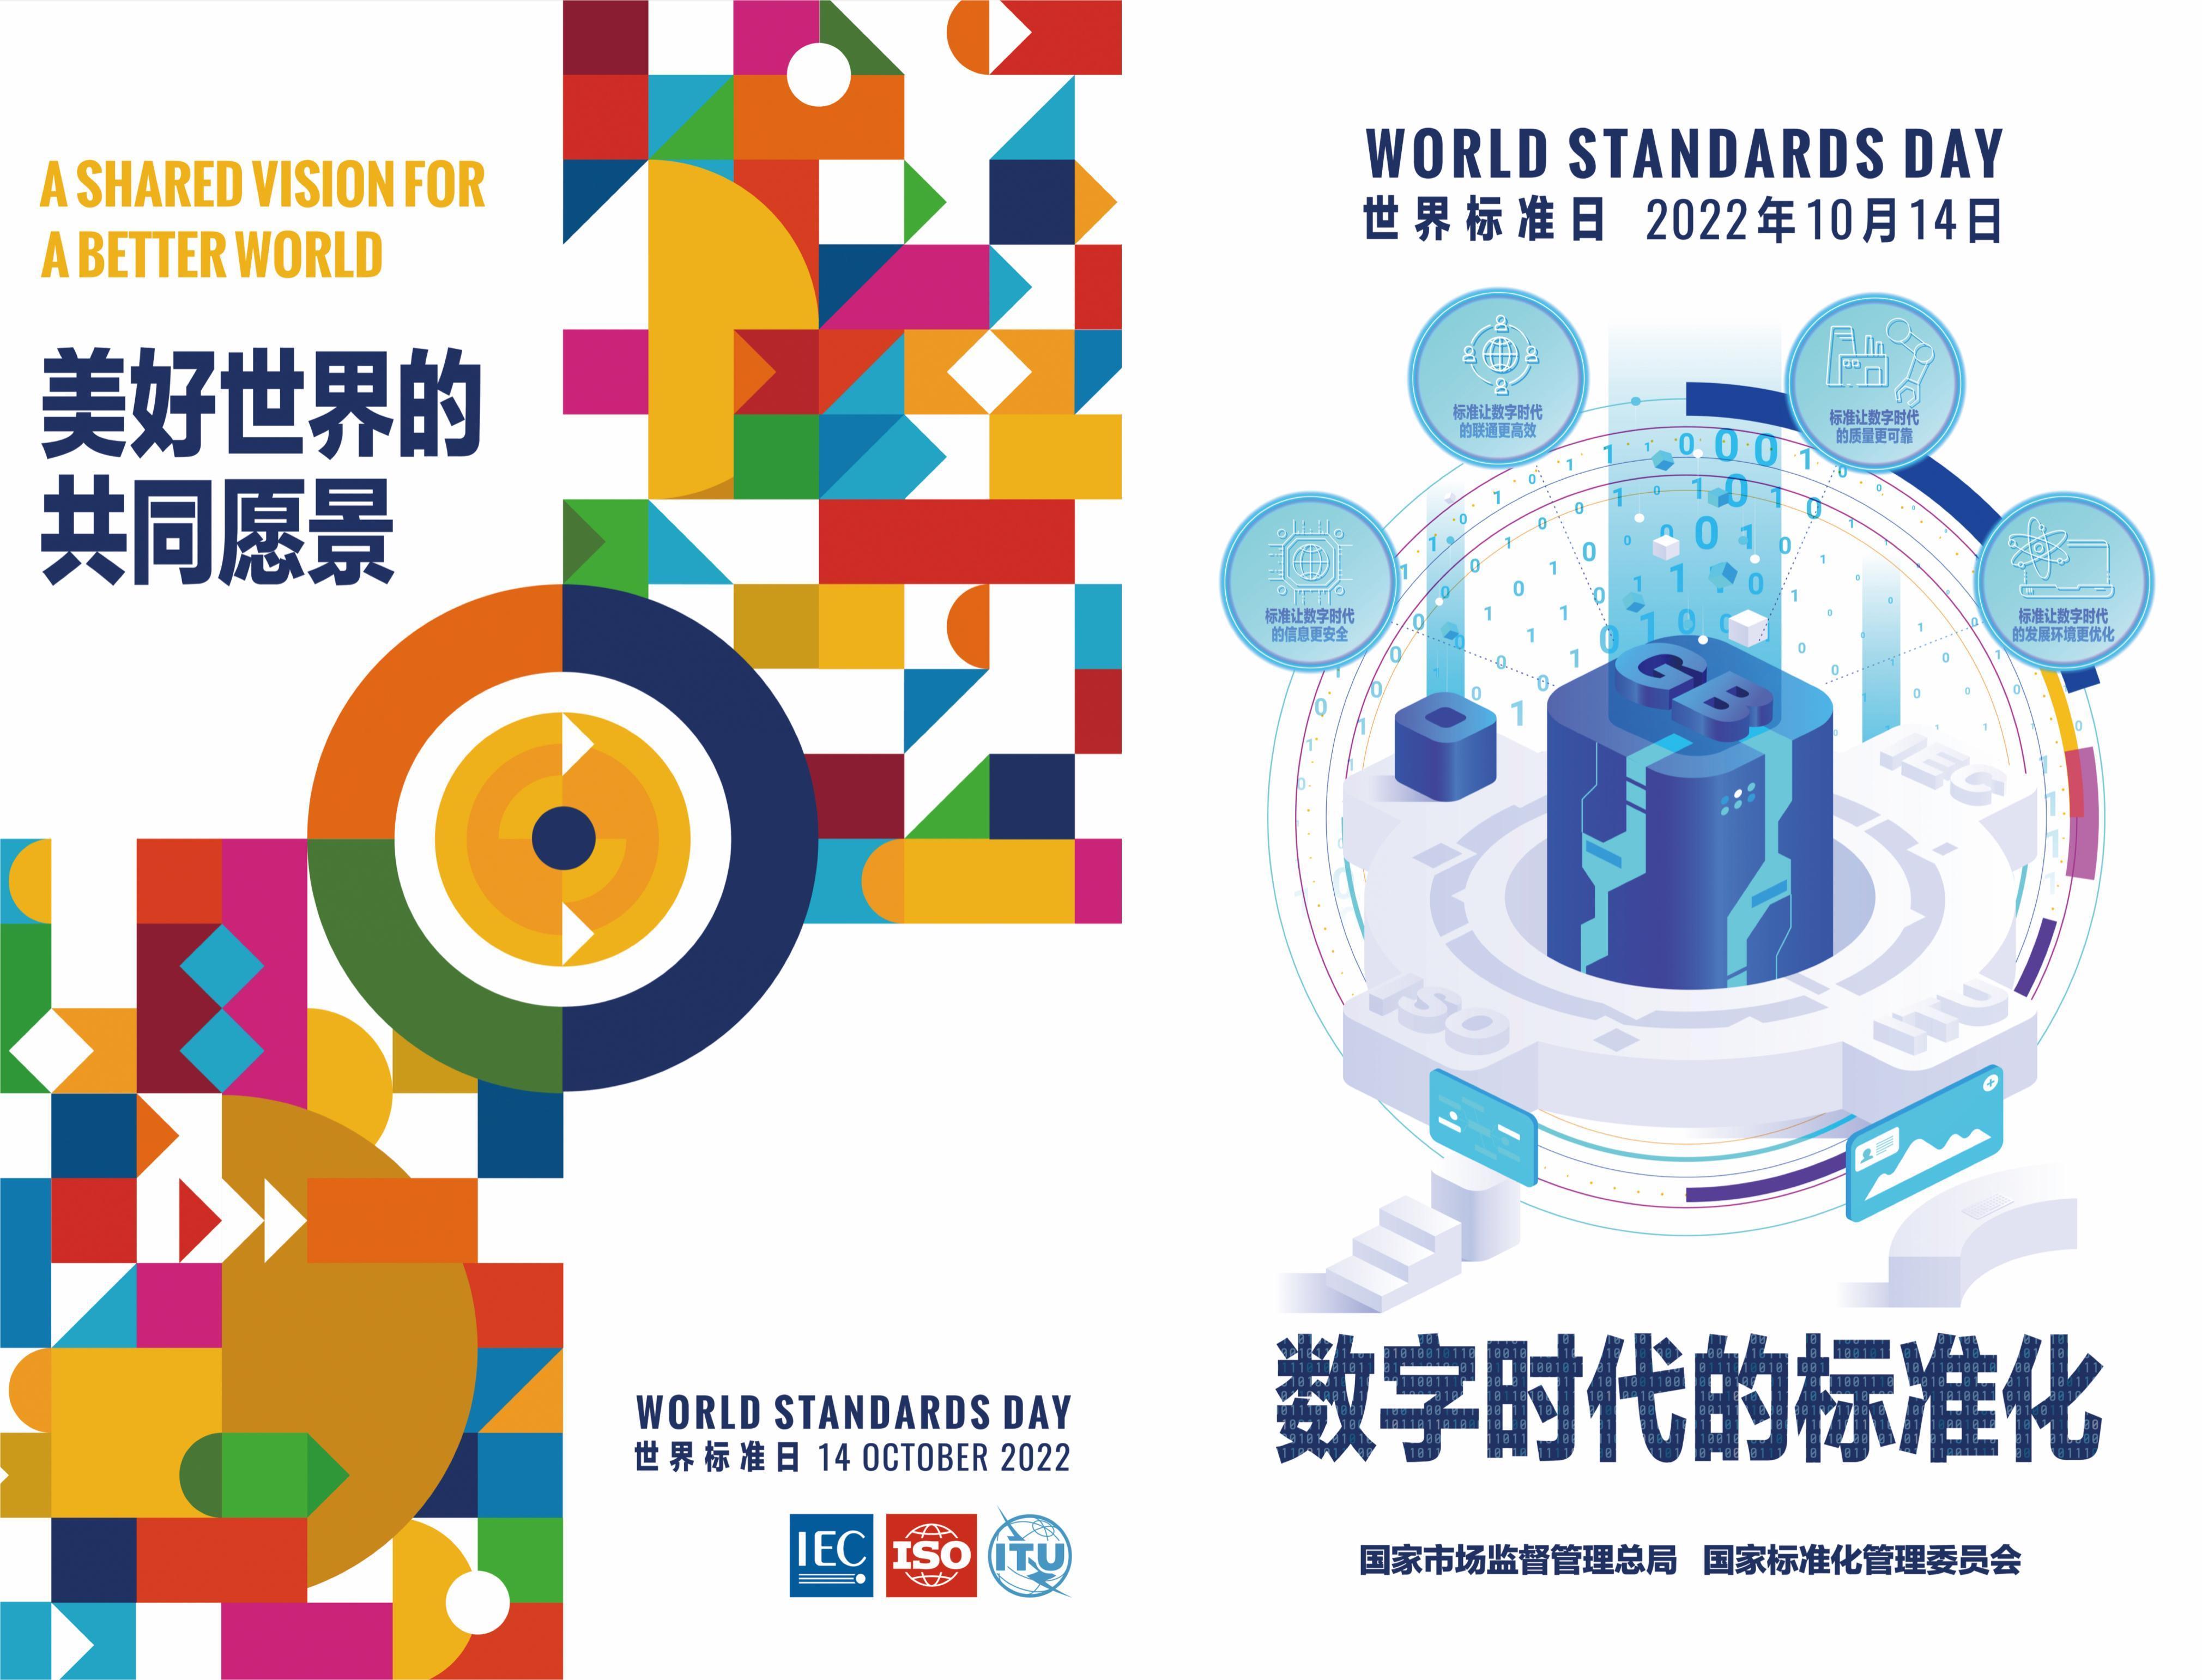 2022年世界标准日祝词:美好世界的共同愿景,数字时代的标准化